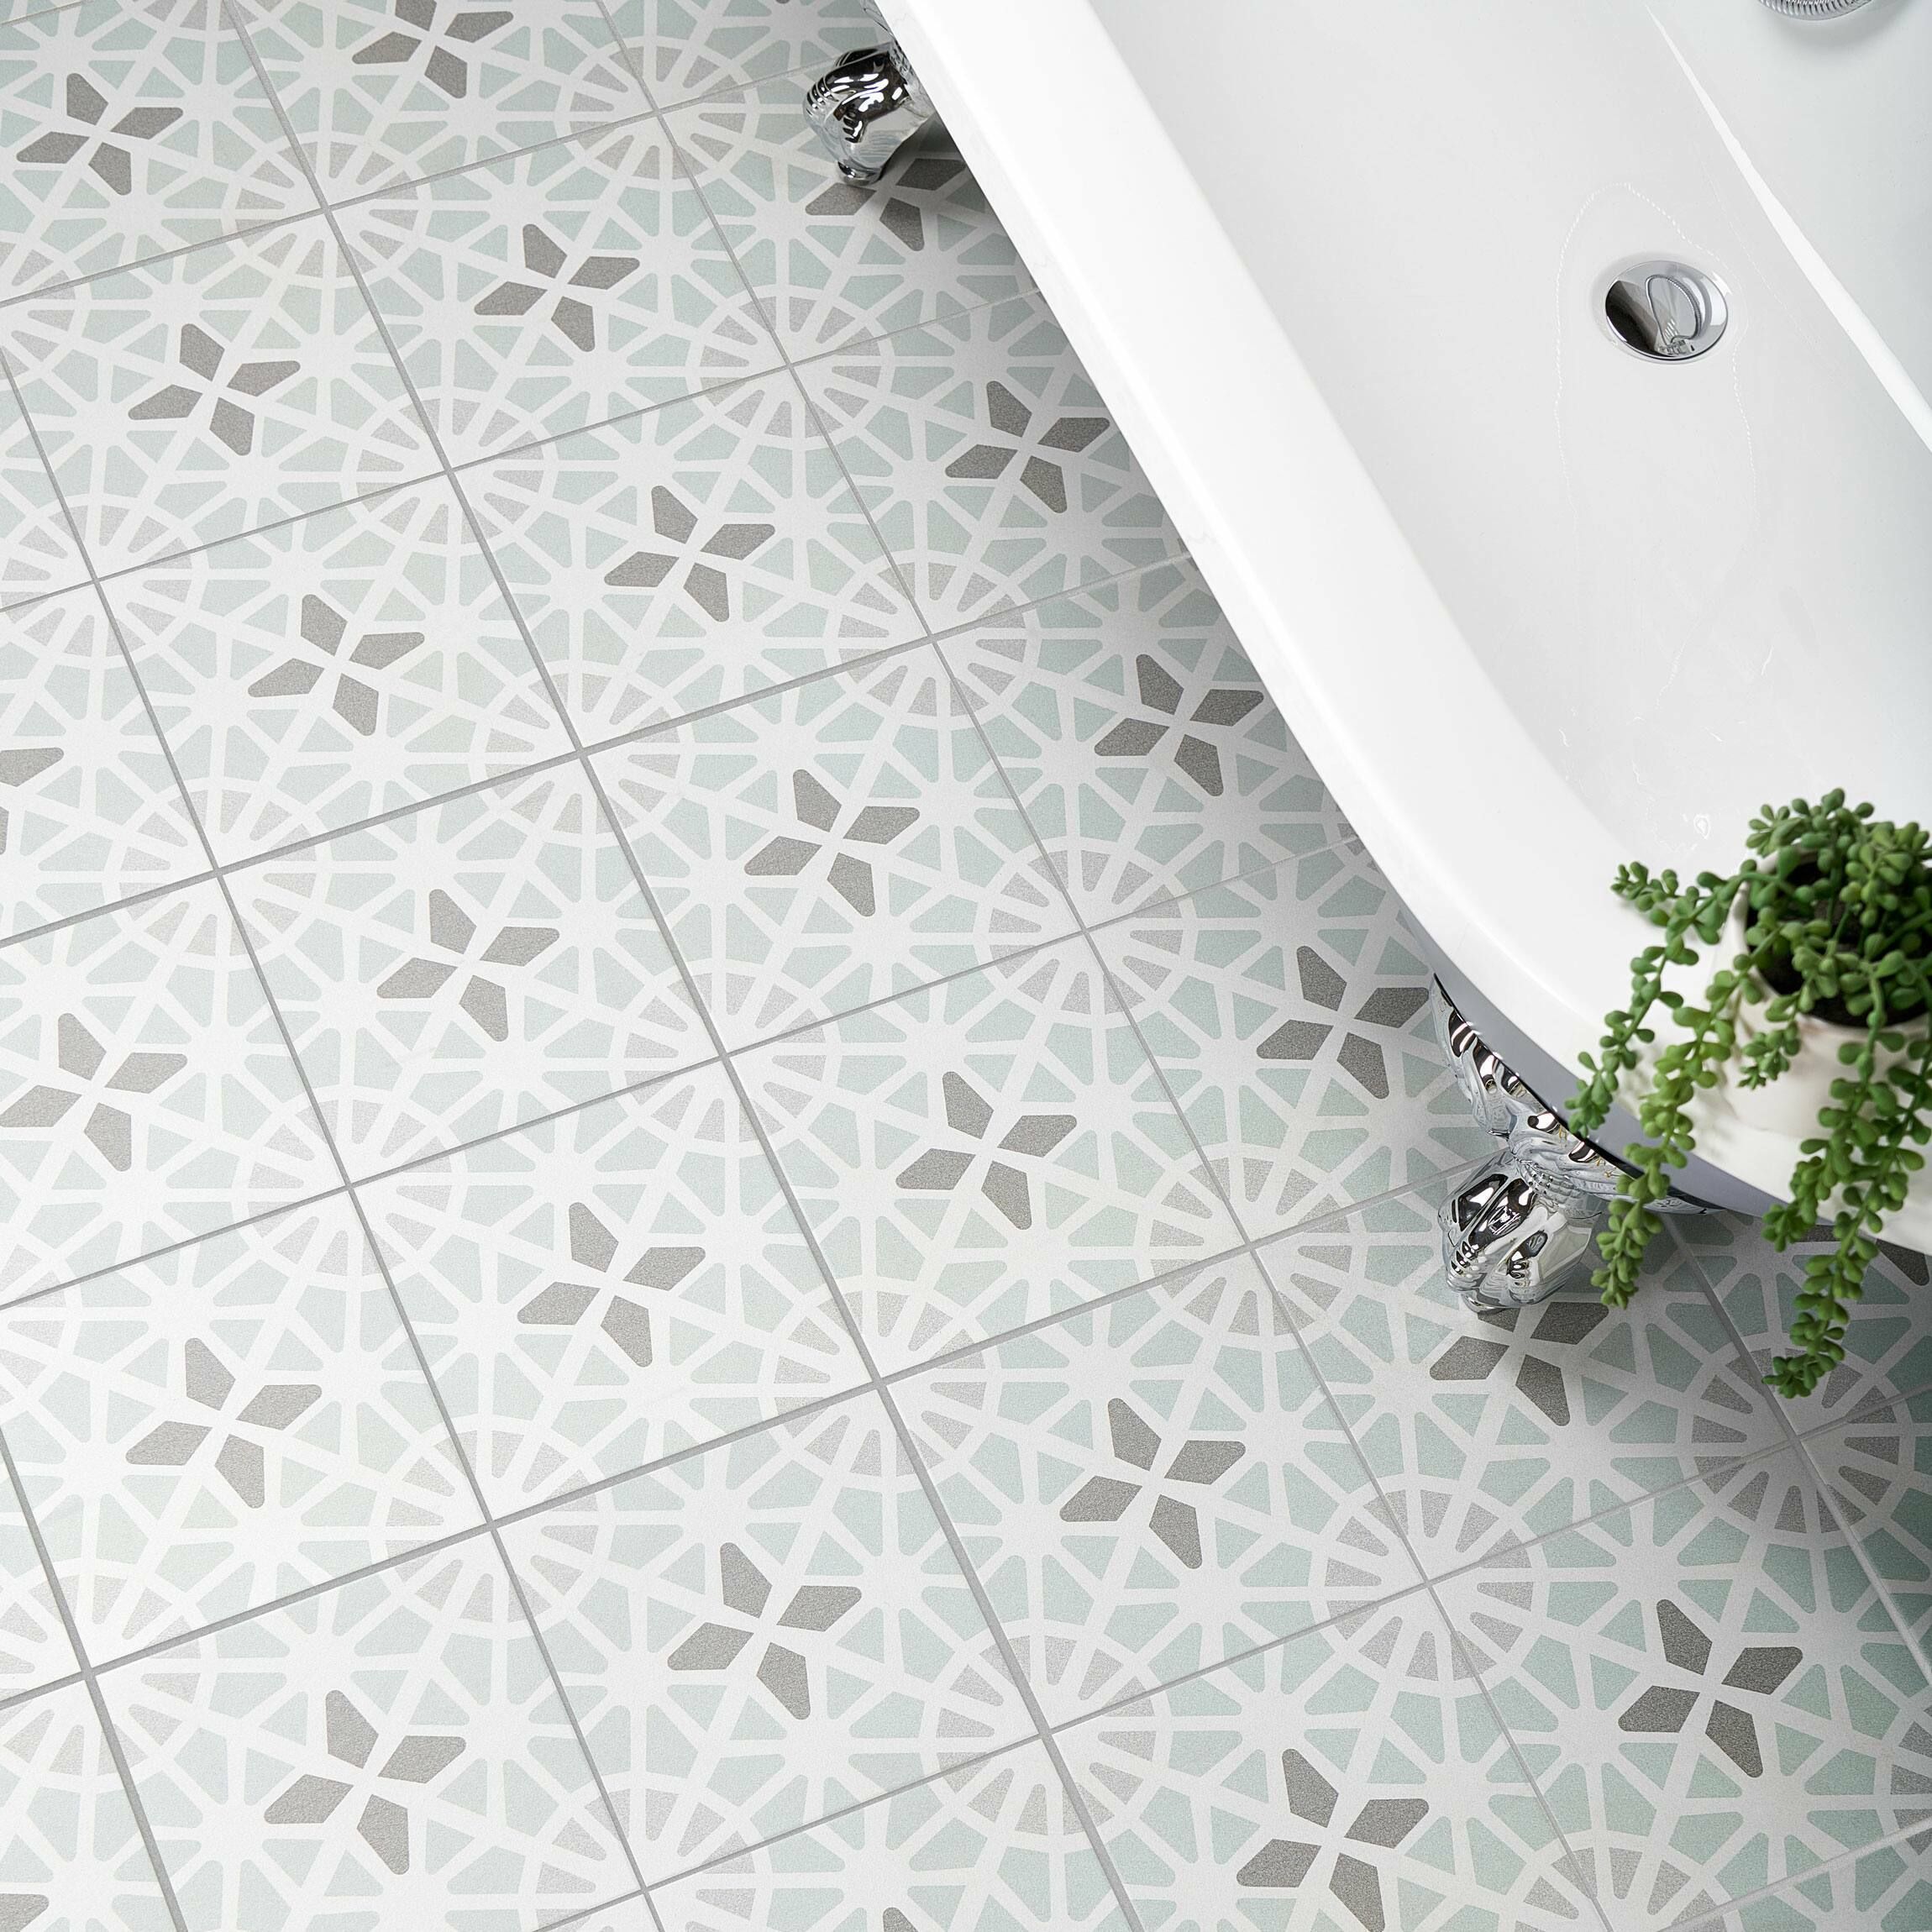 Adele Green Sea Floor Tile Tiles From, Gray Patterned Floor Tile